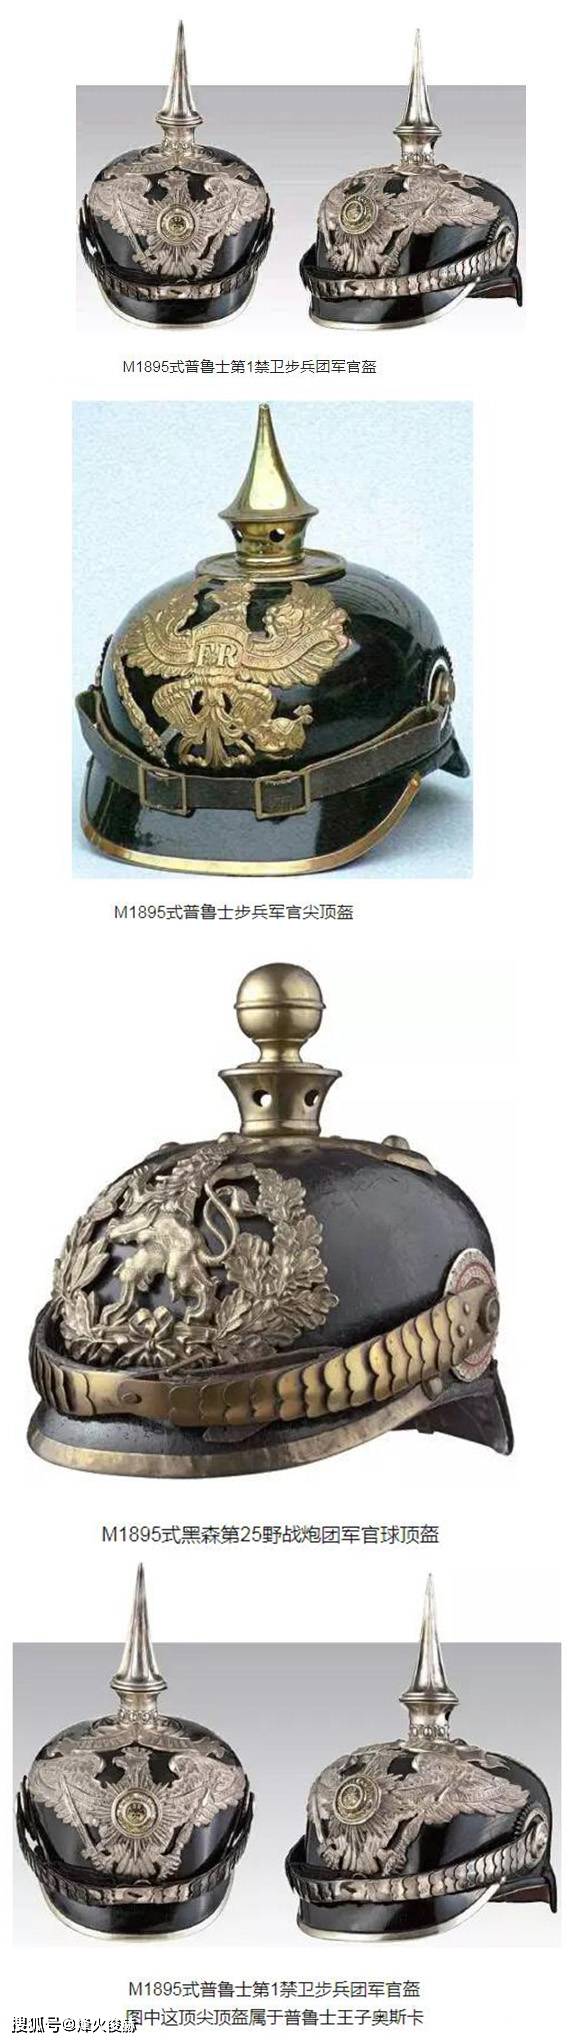 原创花里胡哨的德国军盔,结果,在一战中迅速被淘汰了